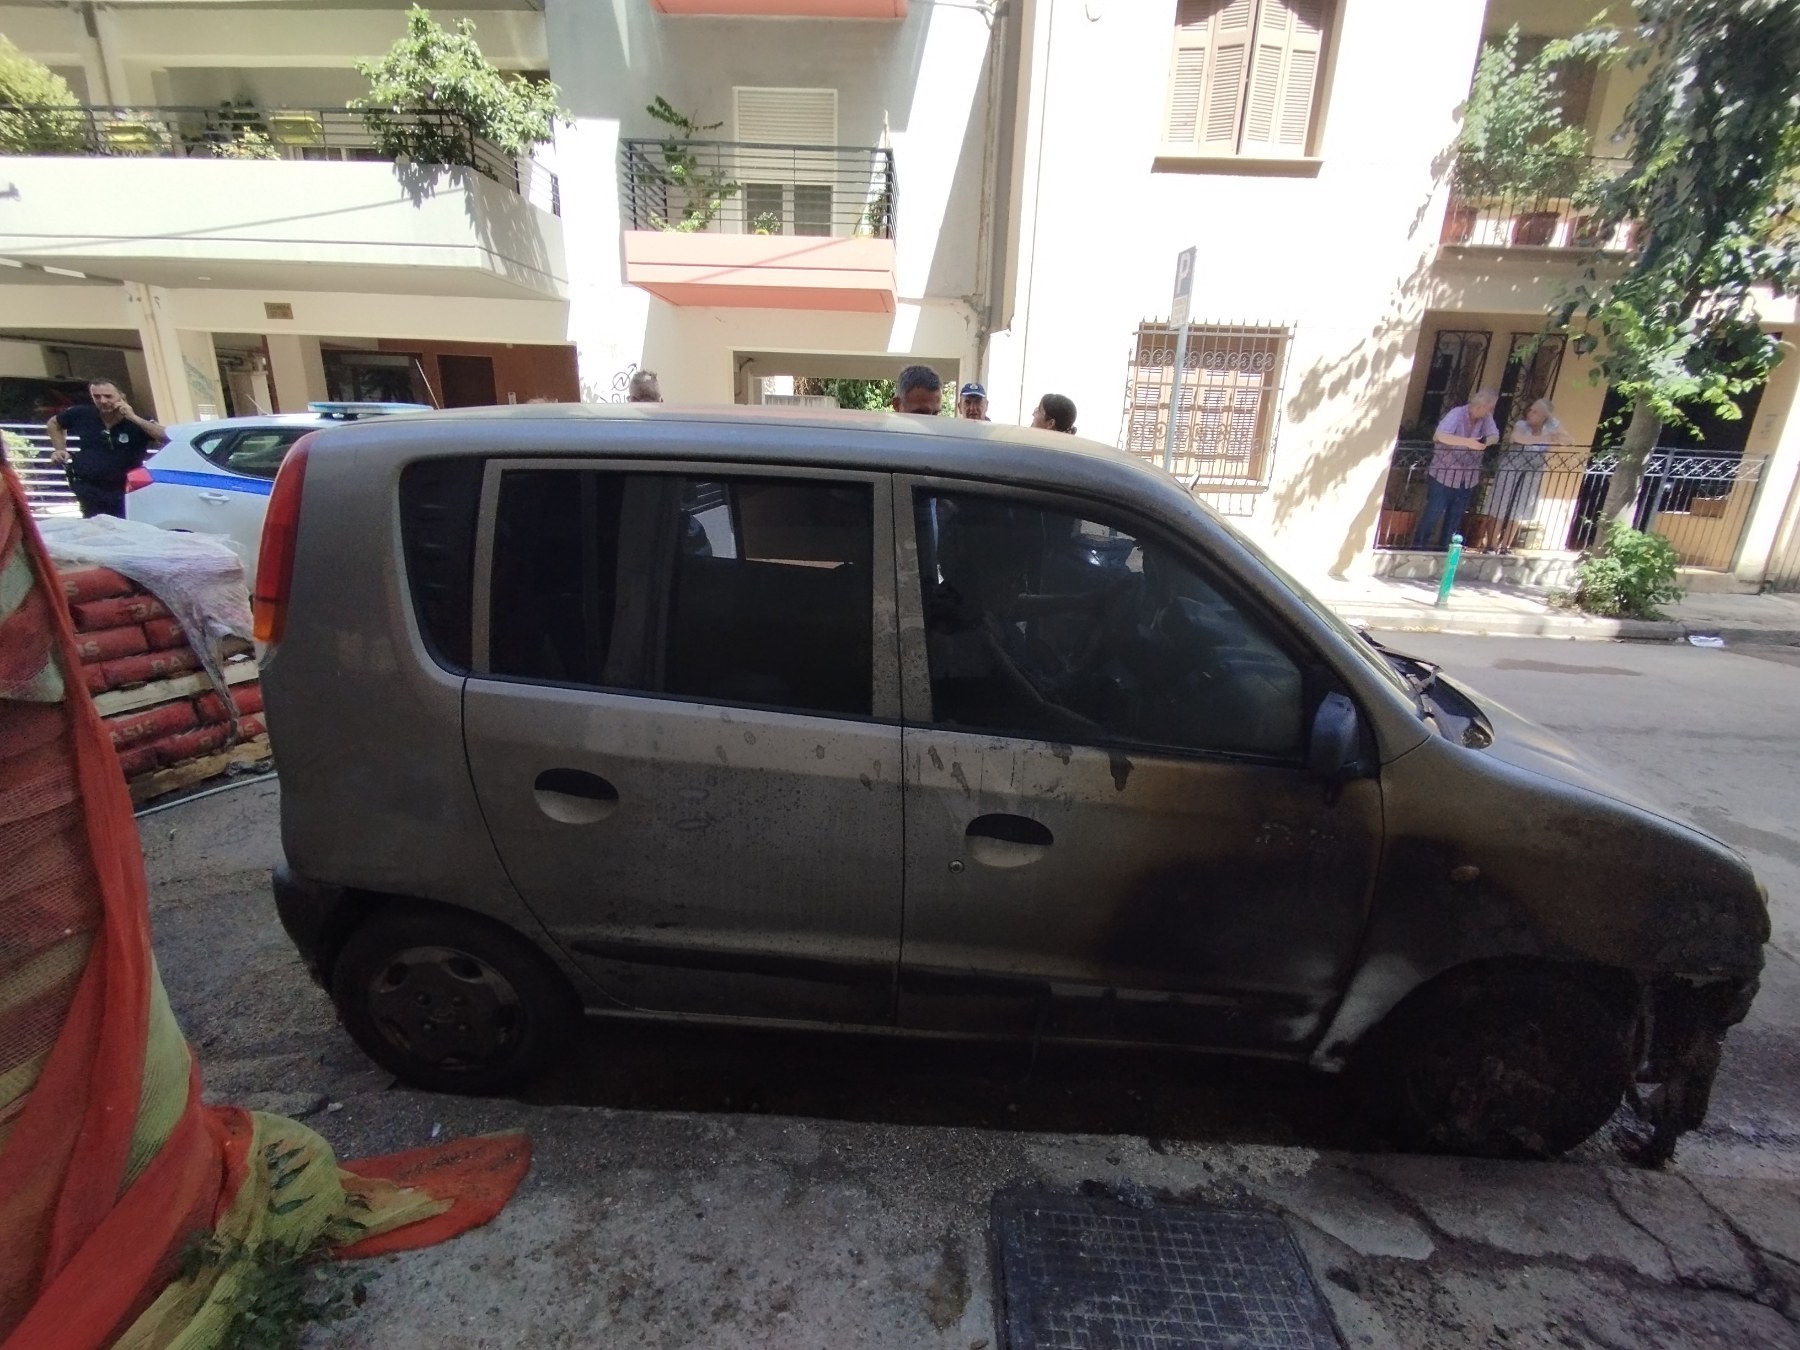 Λάρισας: Τρόμος από φωτιά - «Λαμπάδιασε» μπετονιέρα έξω από πολυκατοικία – Άρπαξαν φωτιά σταθμευμένα αυτοκίνητα (φωτο)